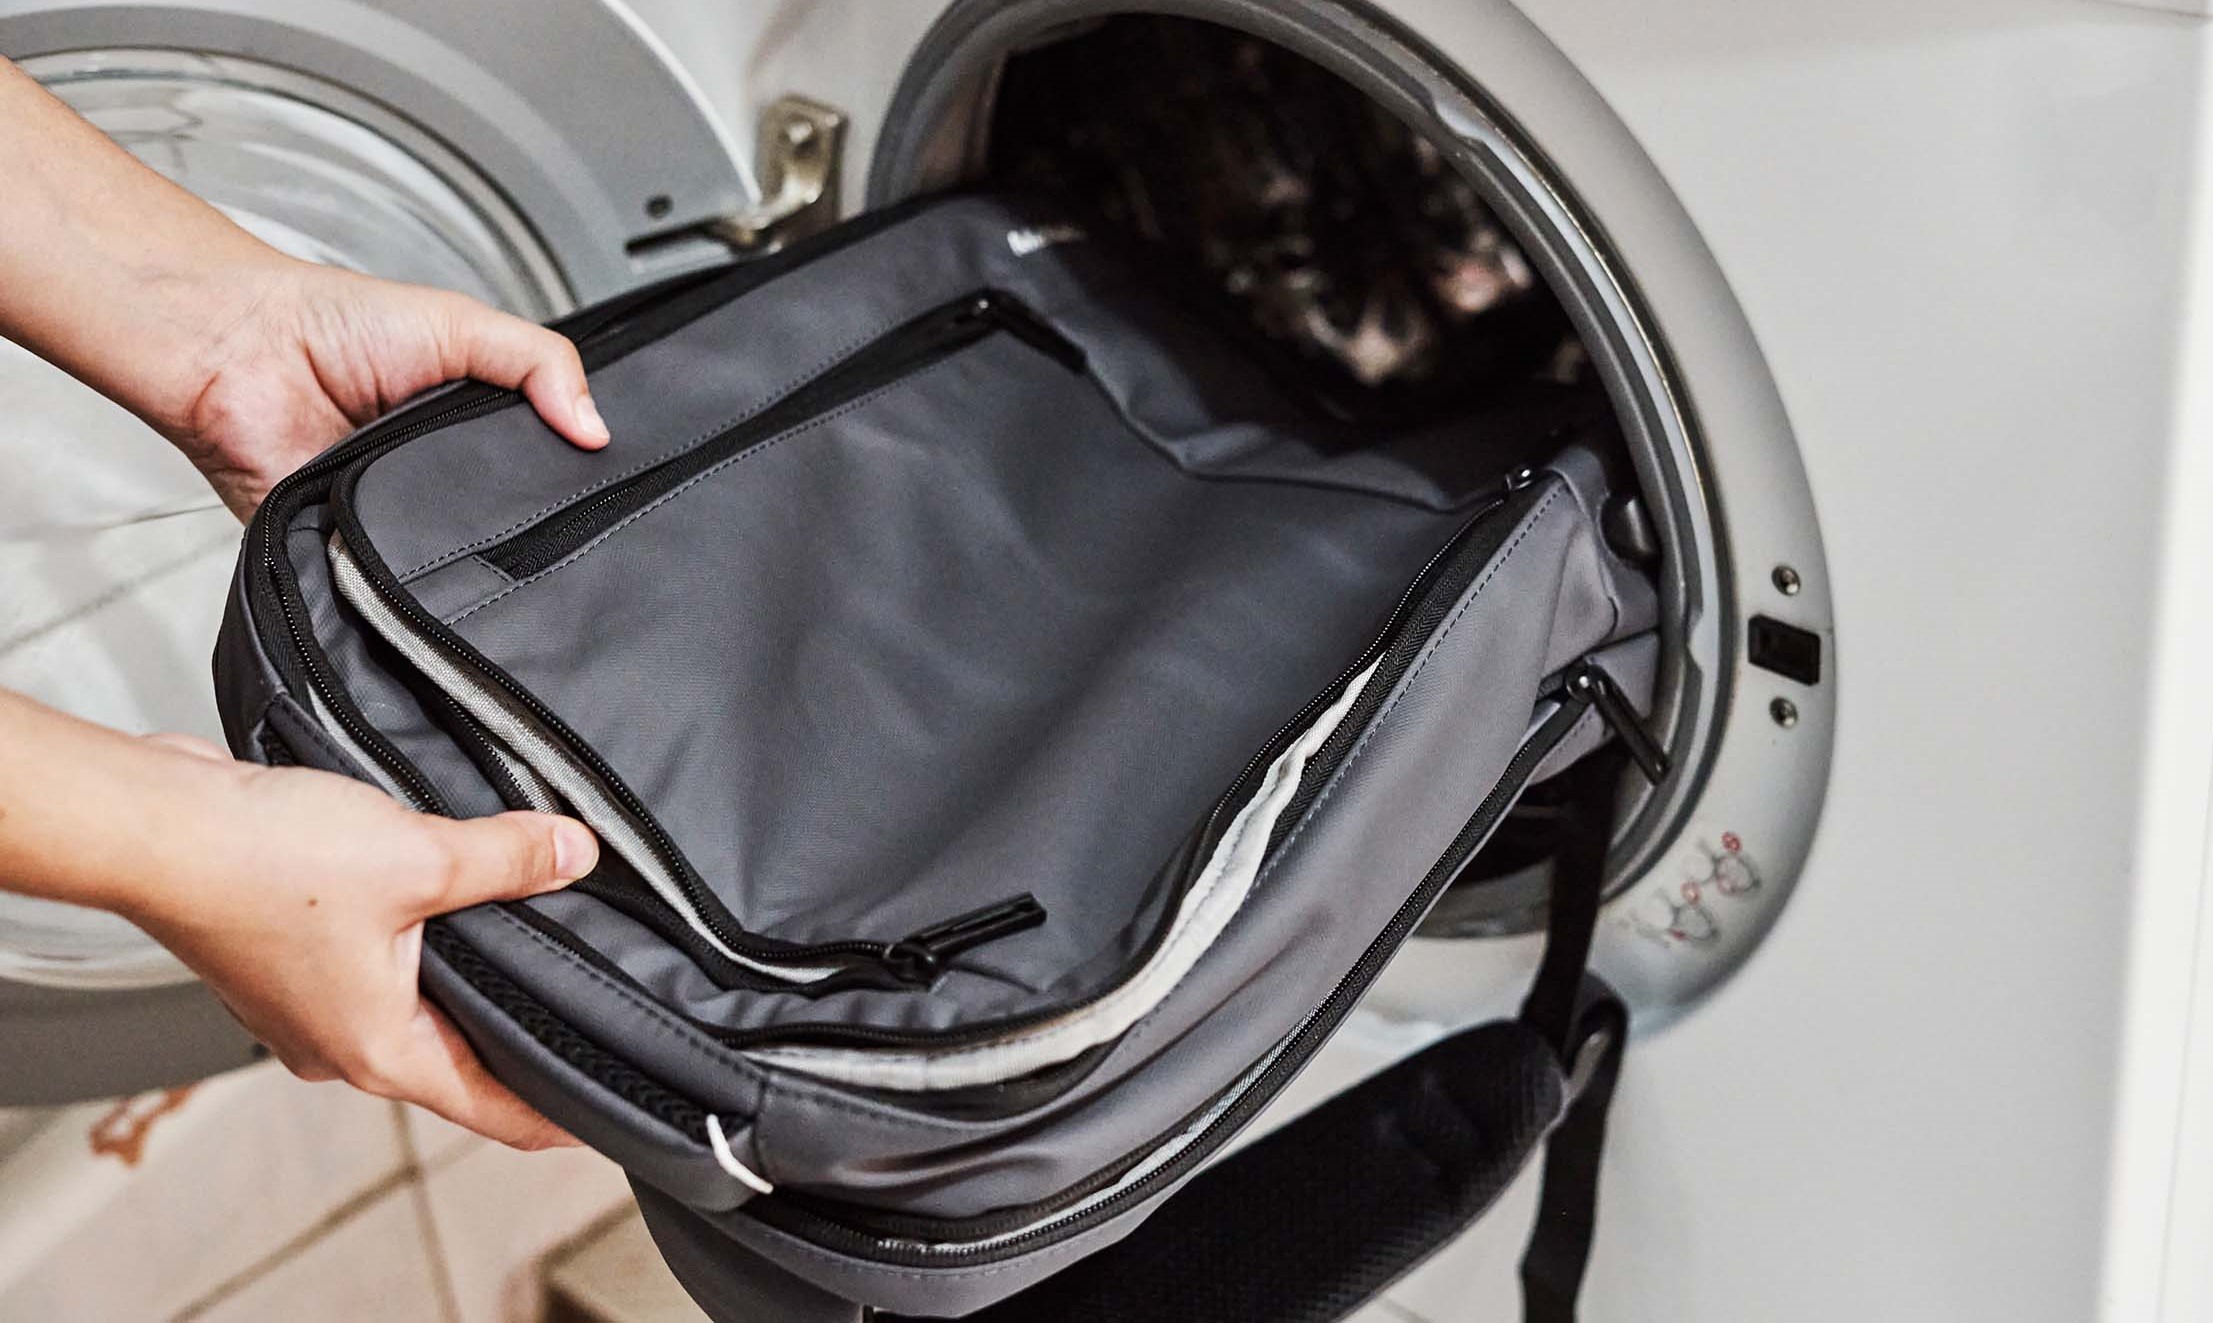 شستن کوله پشتی در ماشین لباسشویی - از بین بردن لکه ی کوله پشتی